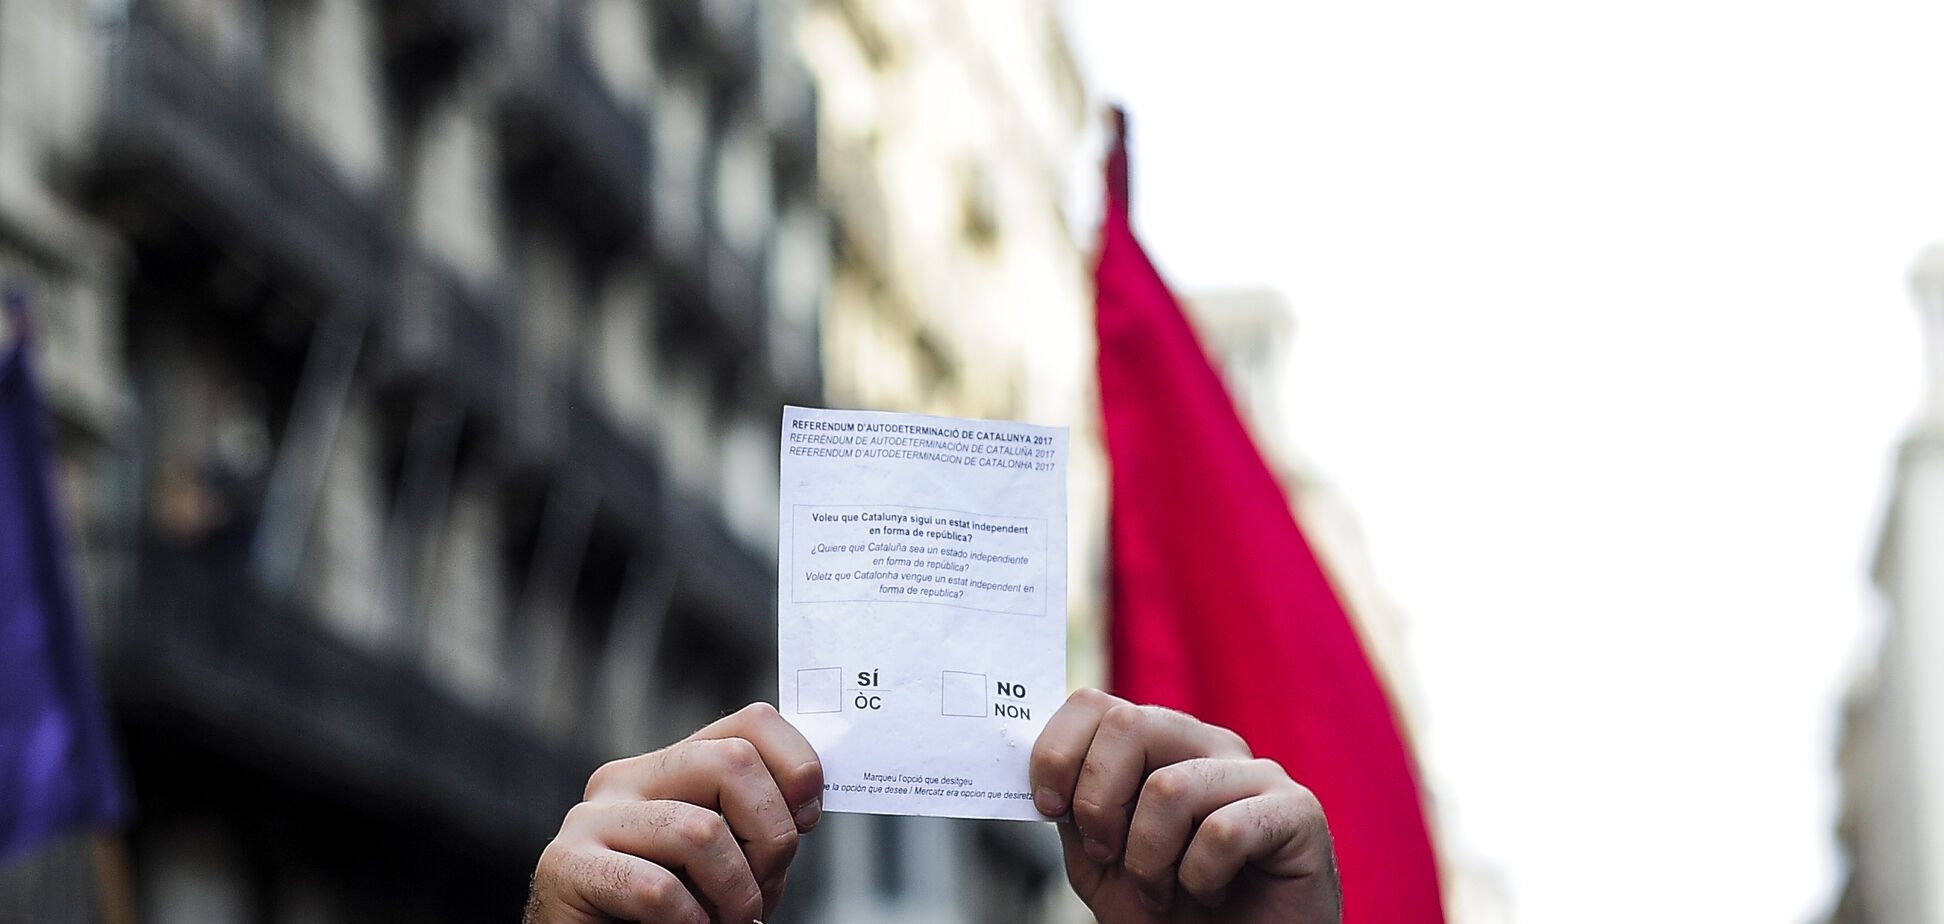 Сепаратизм в Каталонии: обнародованы окончательные результаты референдума о независимости